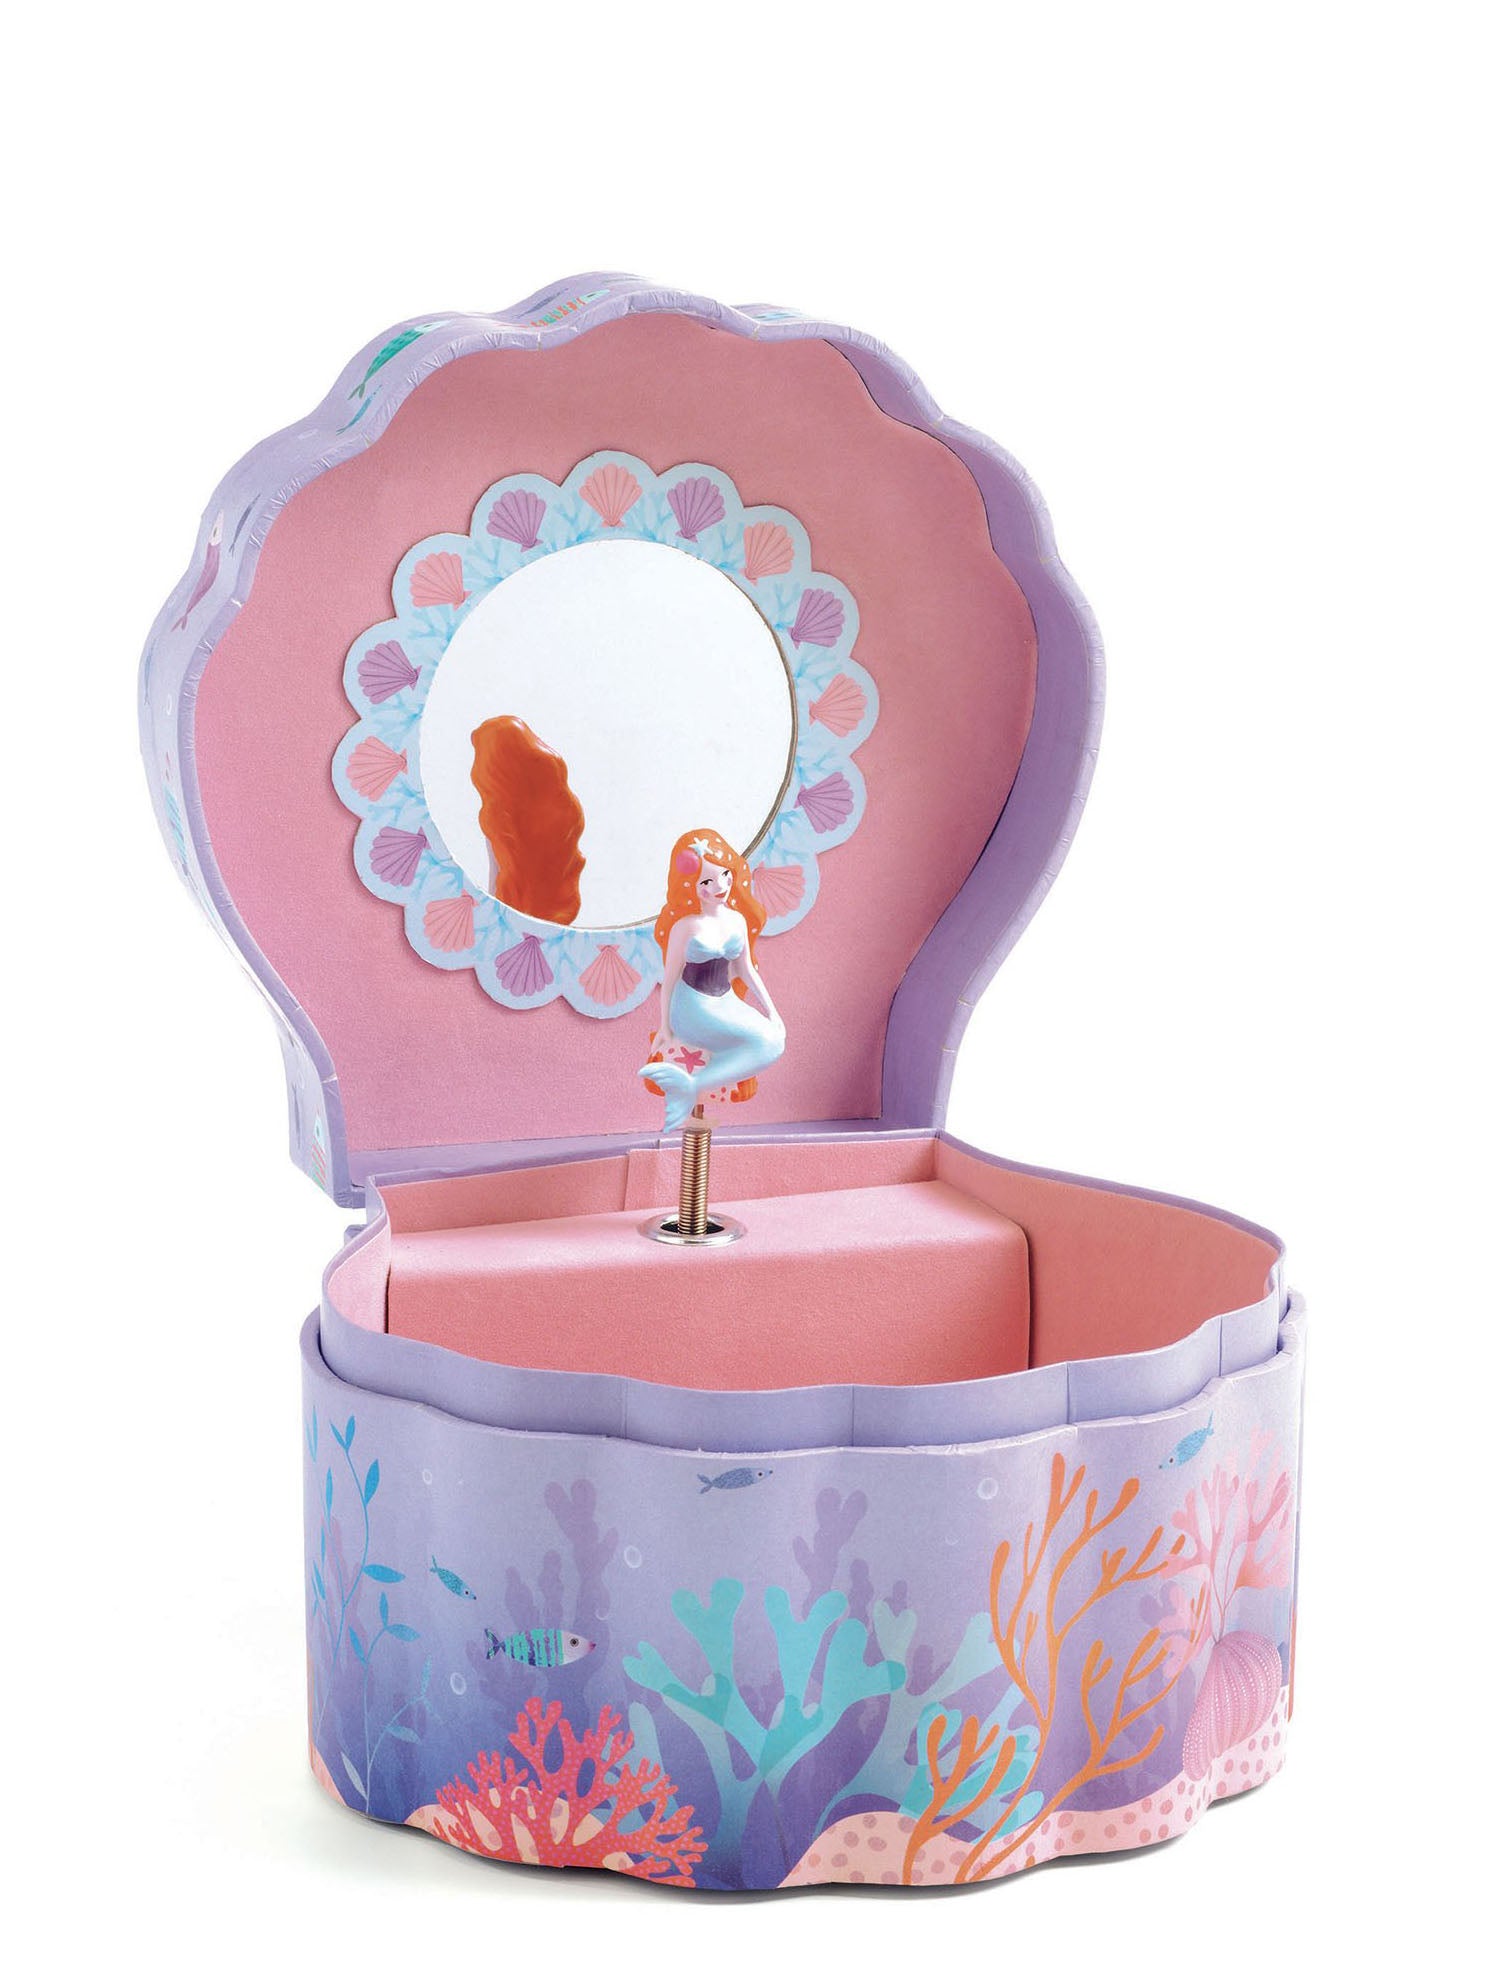 Enchanted mermaid music box